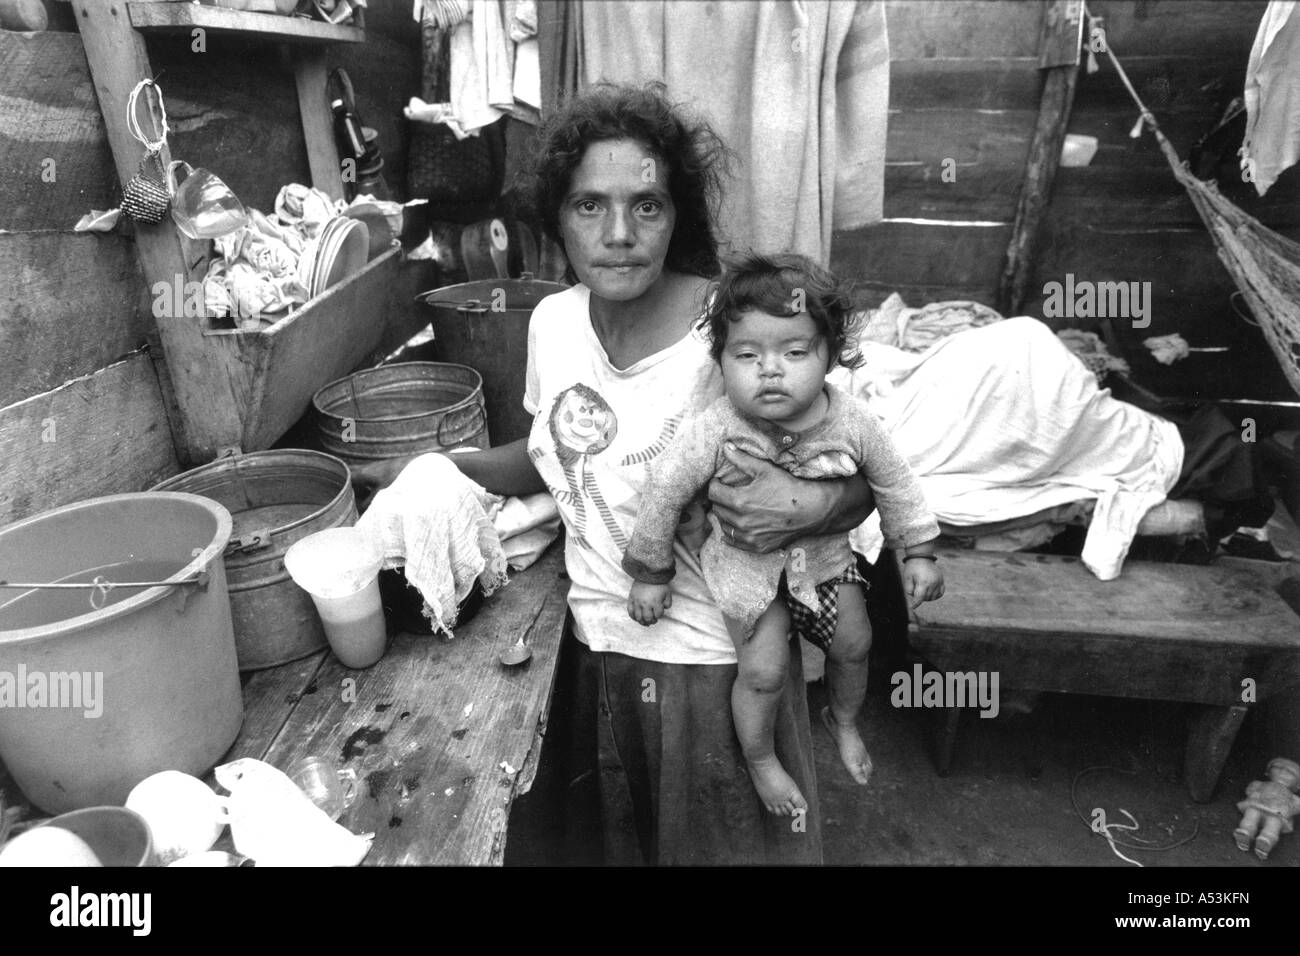 Painet ha1271 057 in bianco e nero la guerra alla povertà vedova bambino esteli nicaragua paese nazione in via di sviluppo meno economicamente Foto Stock